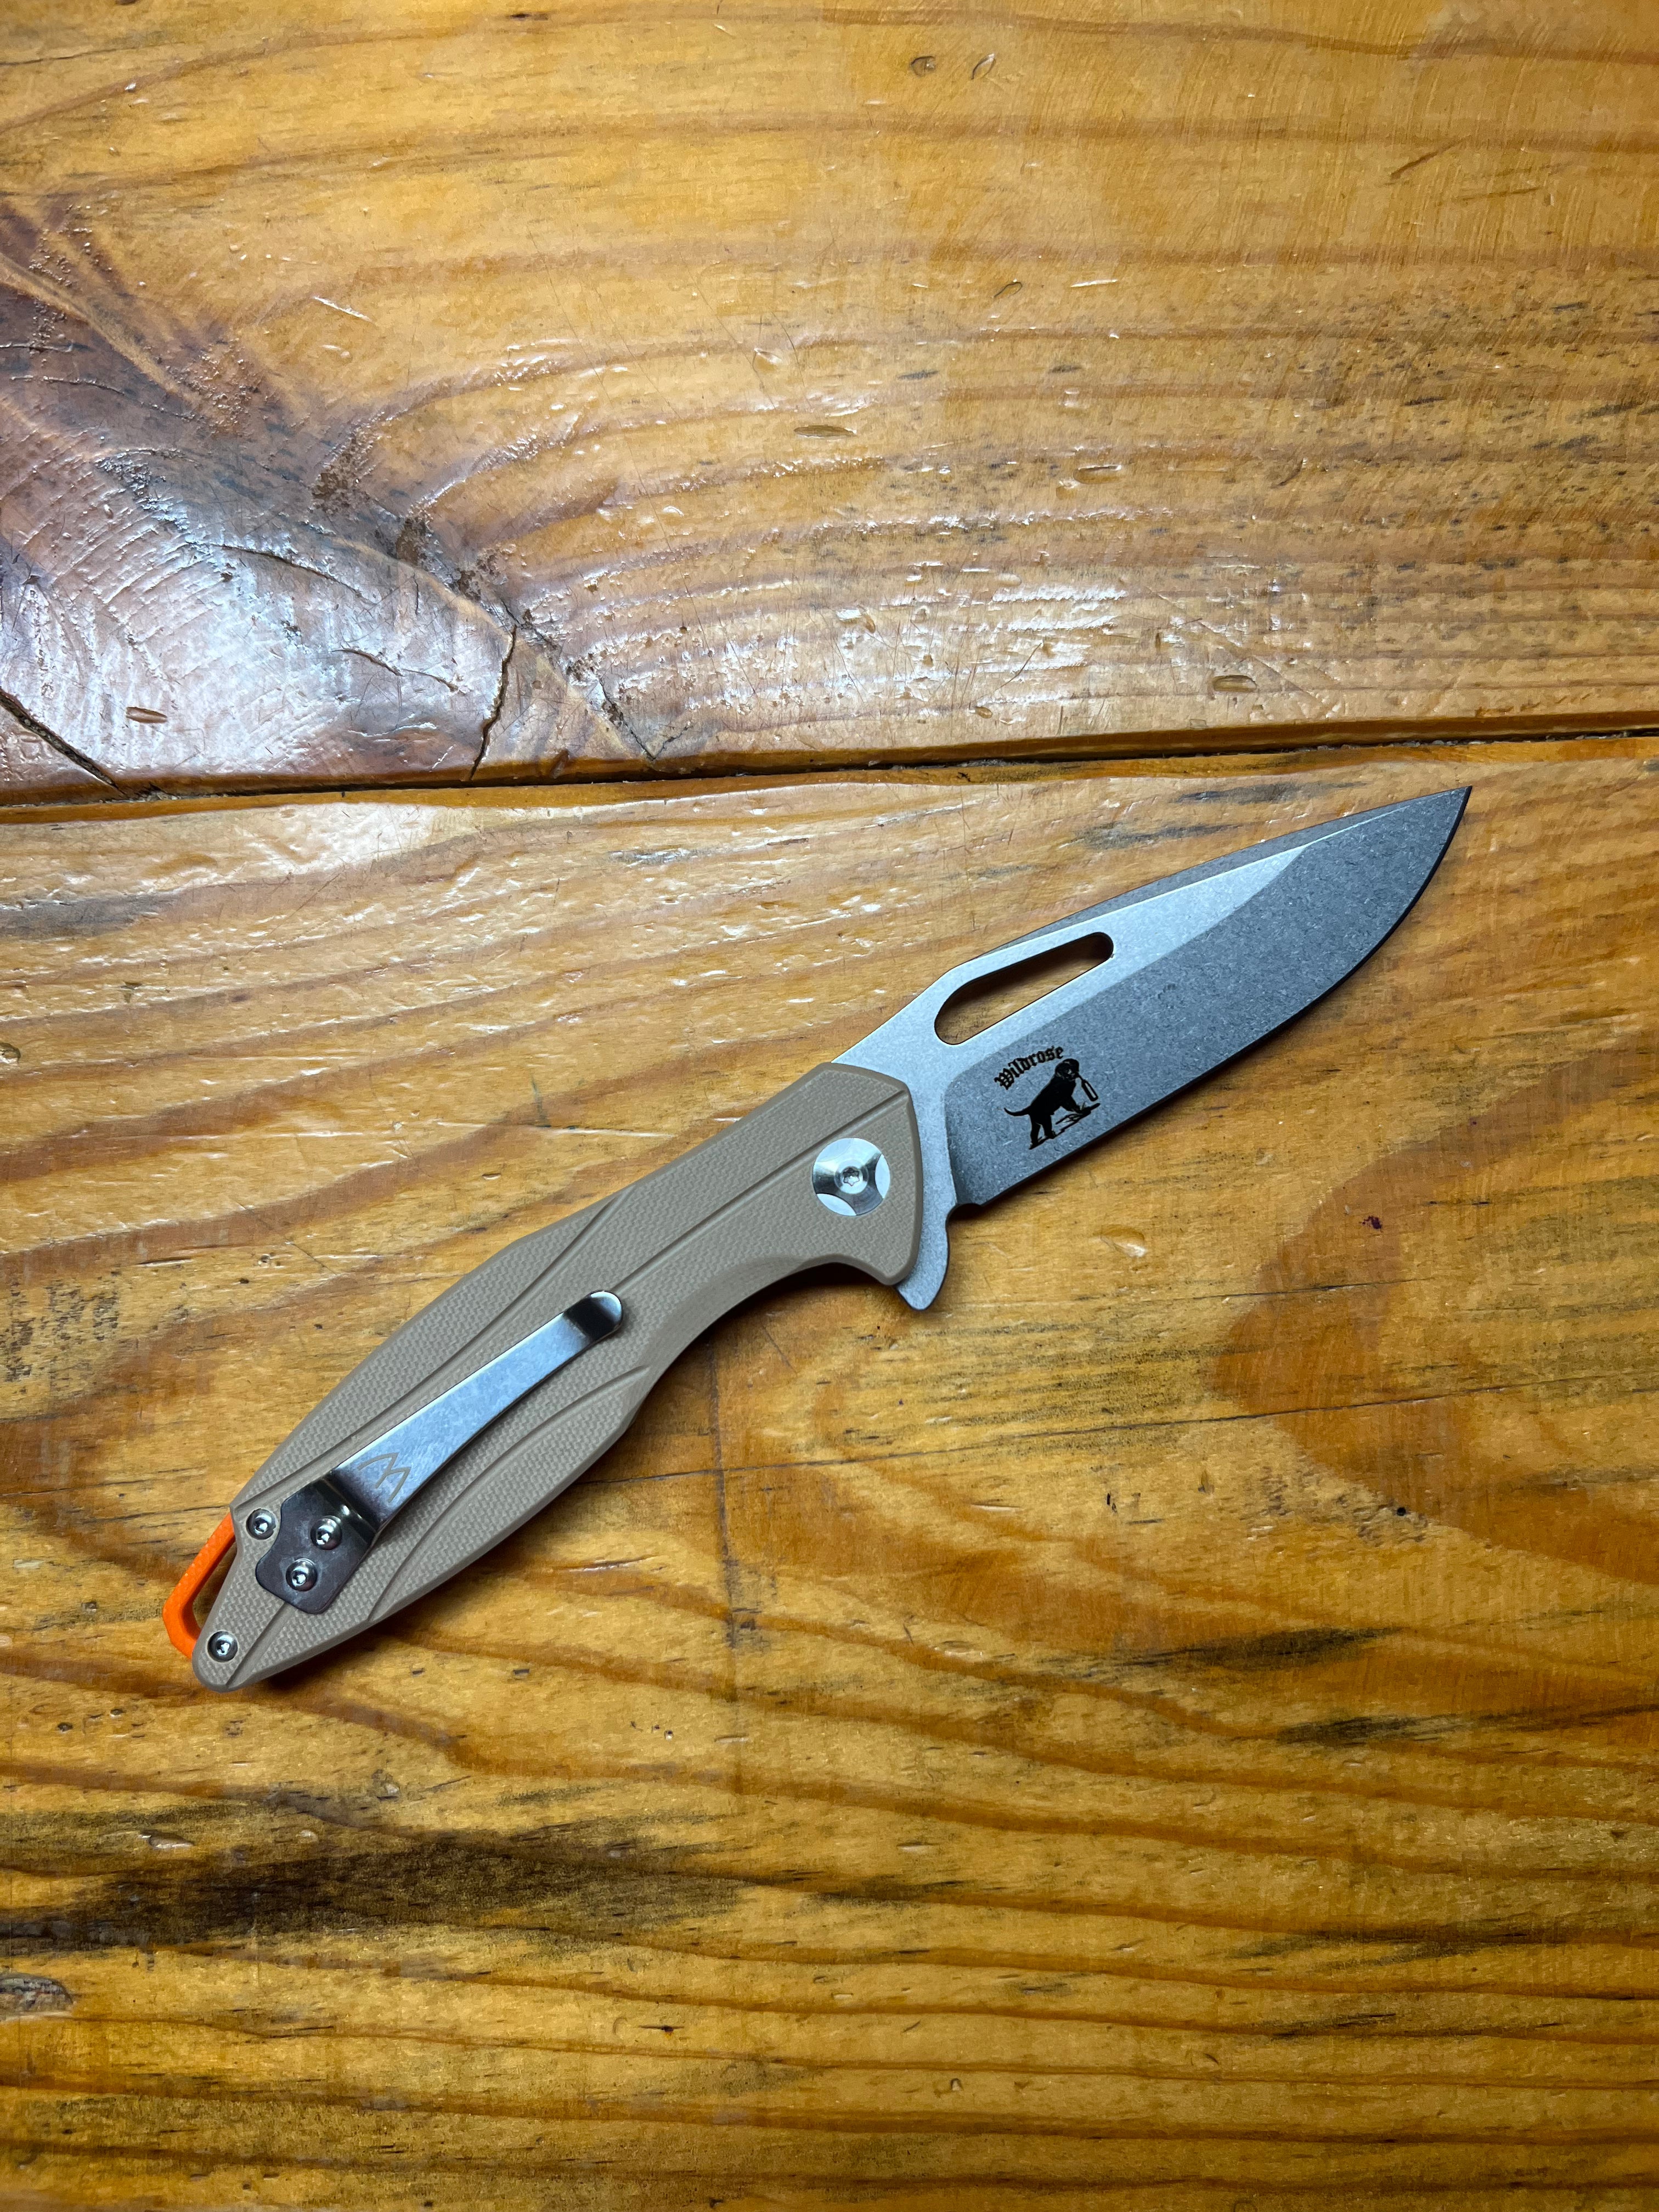 RX Flipper “Williams Knife”